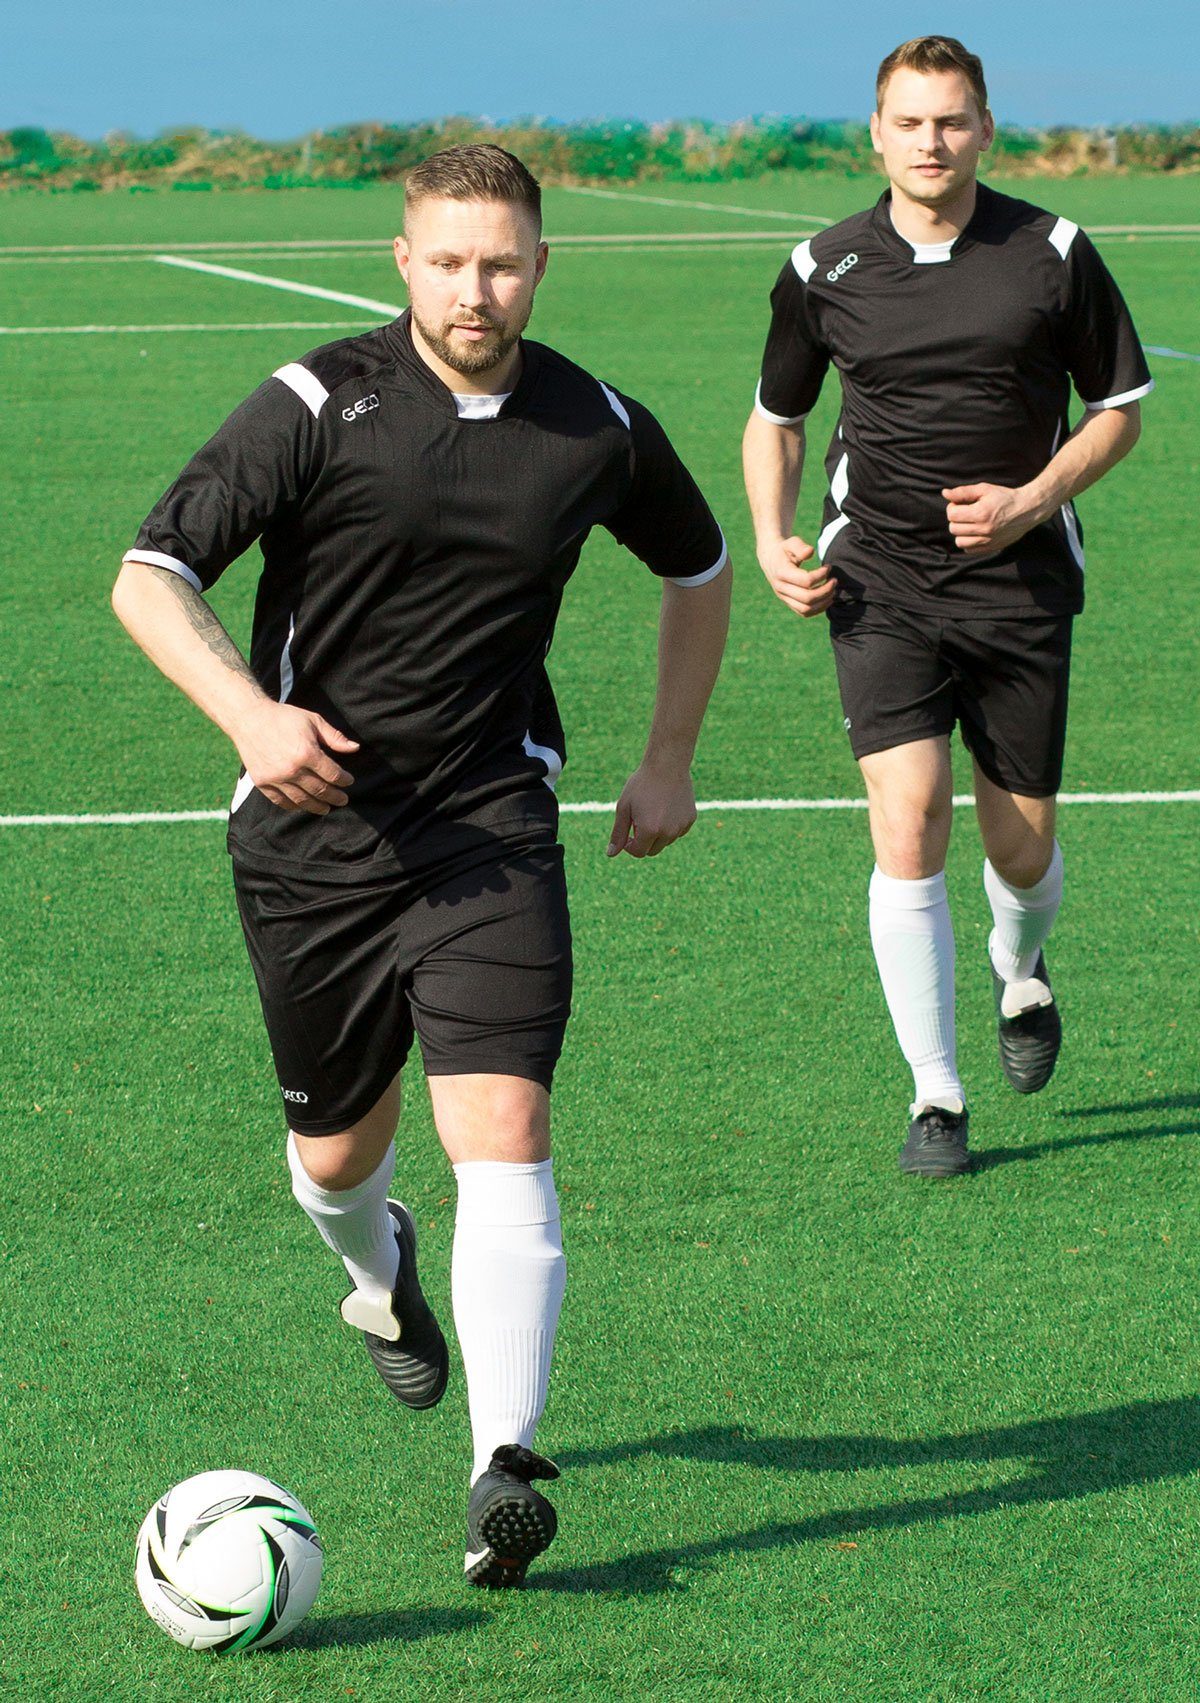 Sportswear kurzarm Einsätze Fußball Levante Geco orange/schwarz Fußballtrikot Geco seitliche zweifarbig Fußballtrikot Mesh Trikot